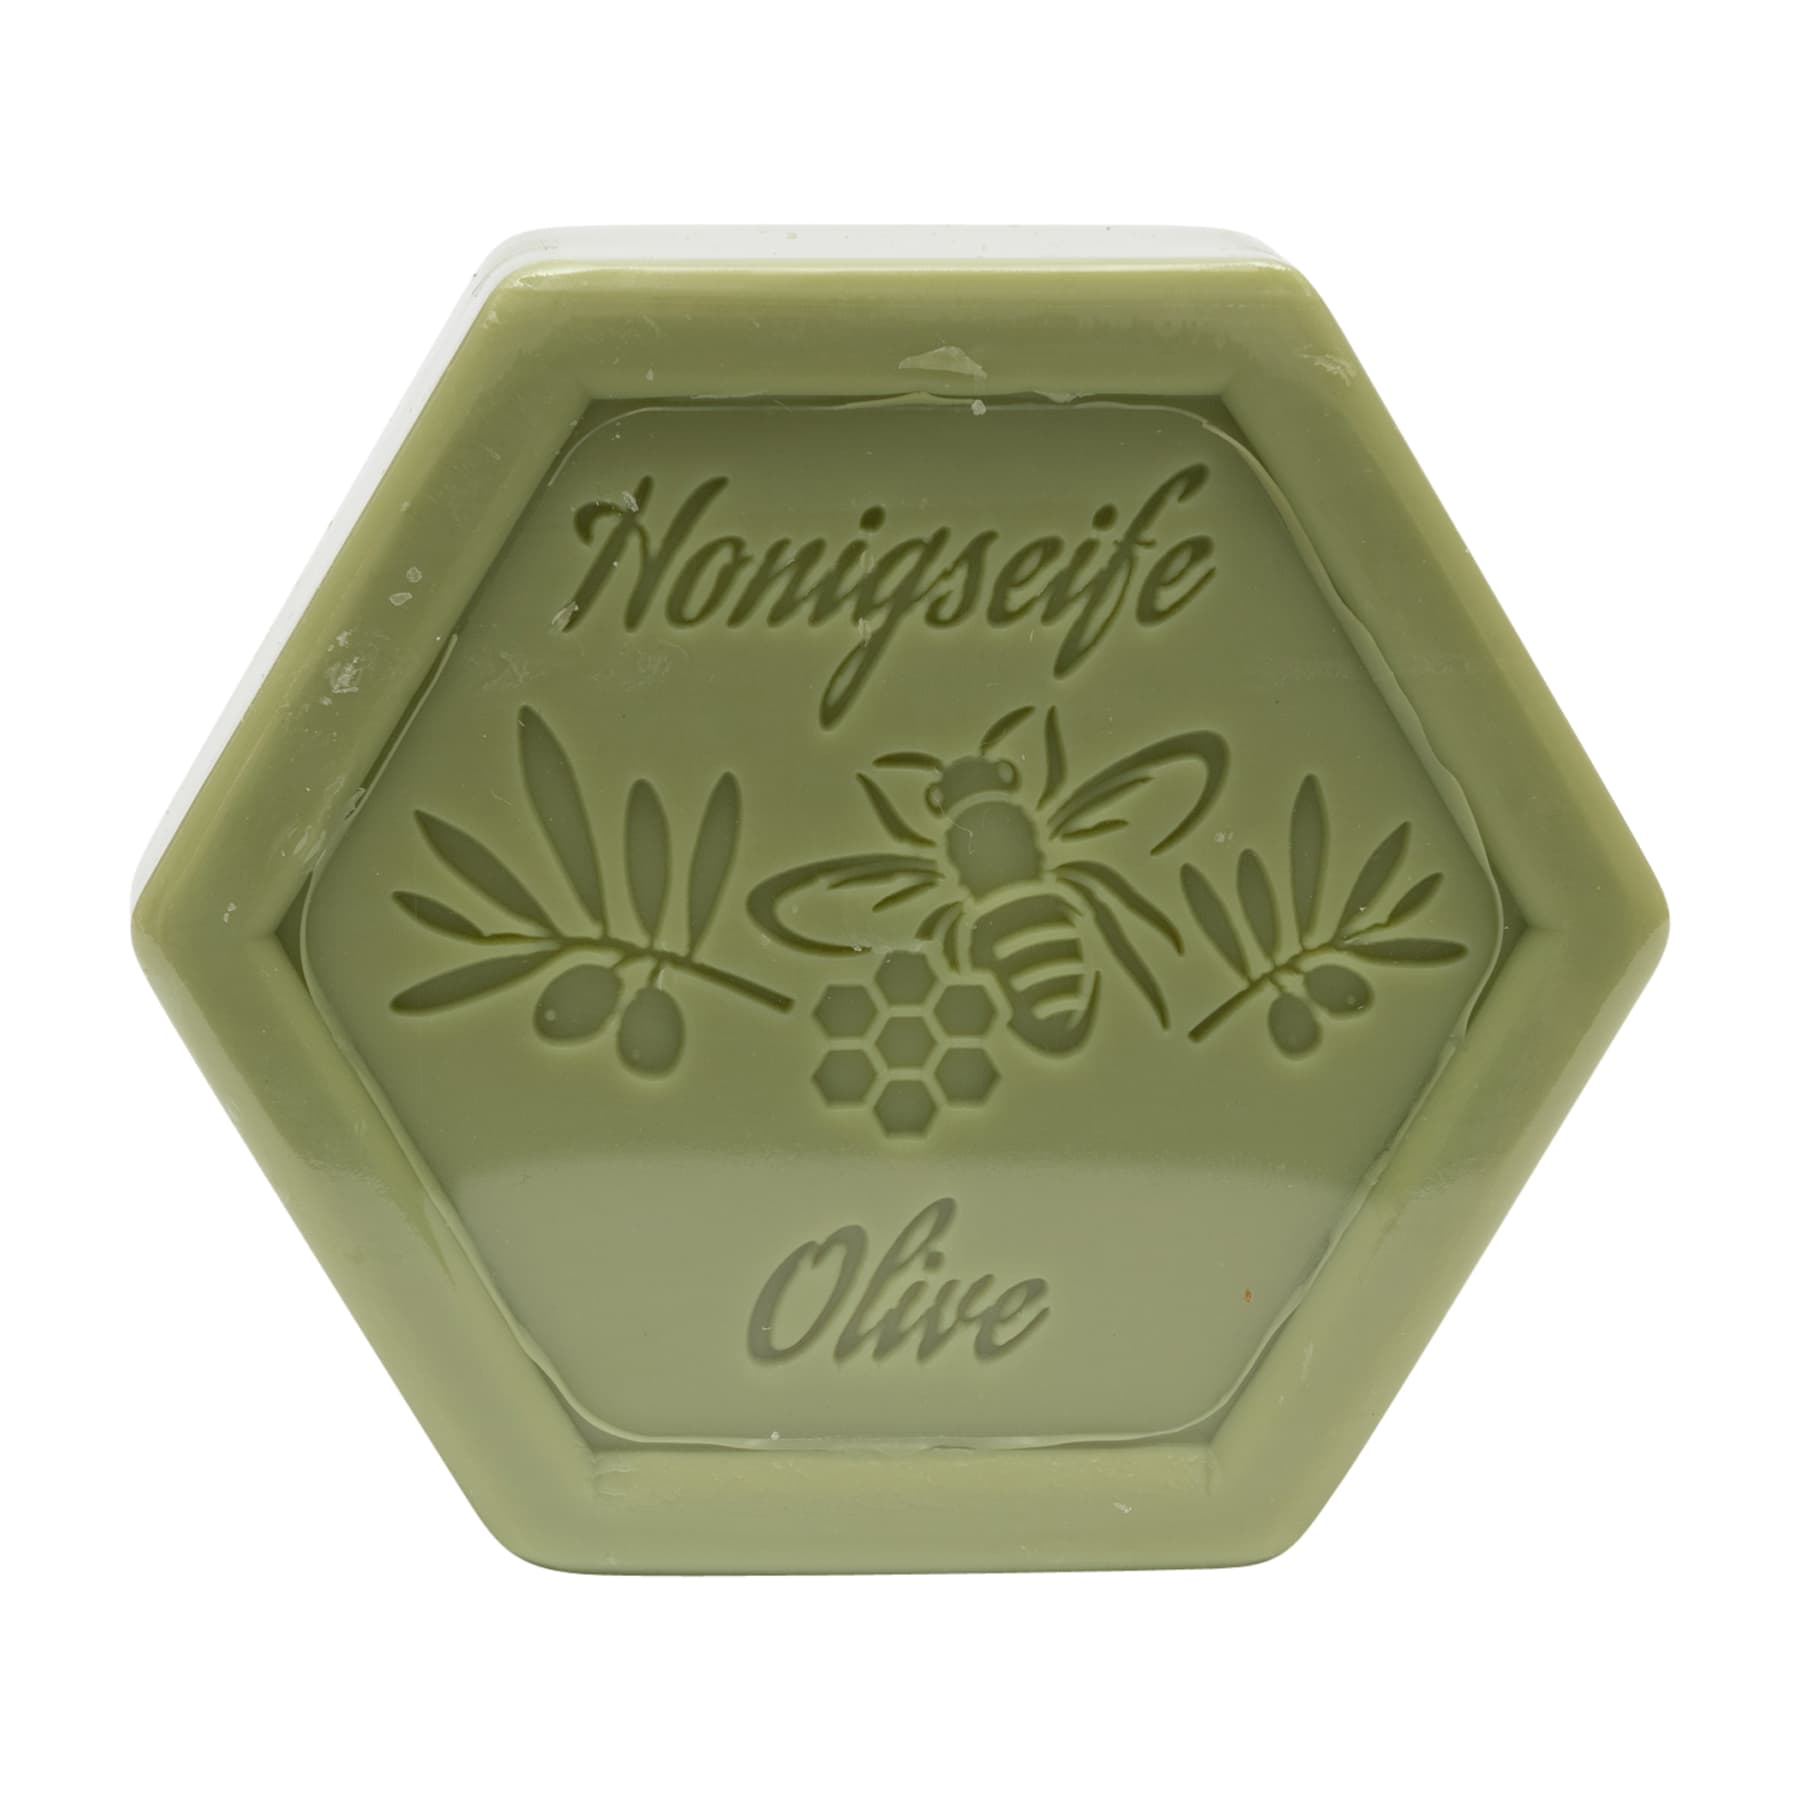 Honigseife mit Olive 100 g in Sechseckform, foliert und etikettiert